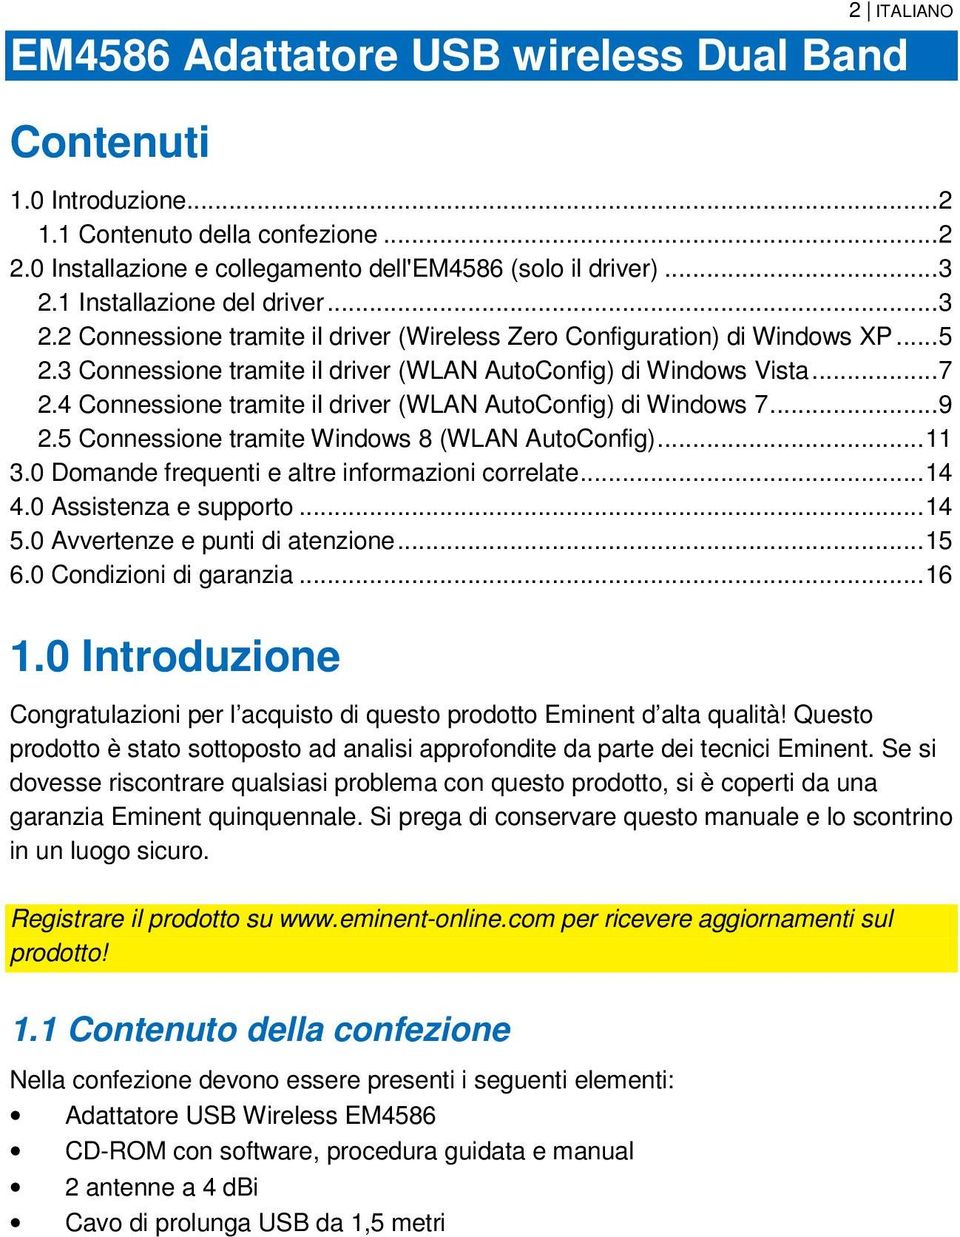 4 Connessione tramite il driver (WLAN AutoConfig) di Windows 7... 9 2.5 Connessione tramite Windows 8 (WLAN AutoConfig)... 11 3.0 Domande frequenti e altre informazioni correlate... 14 4.